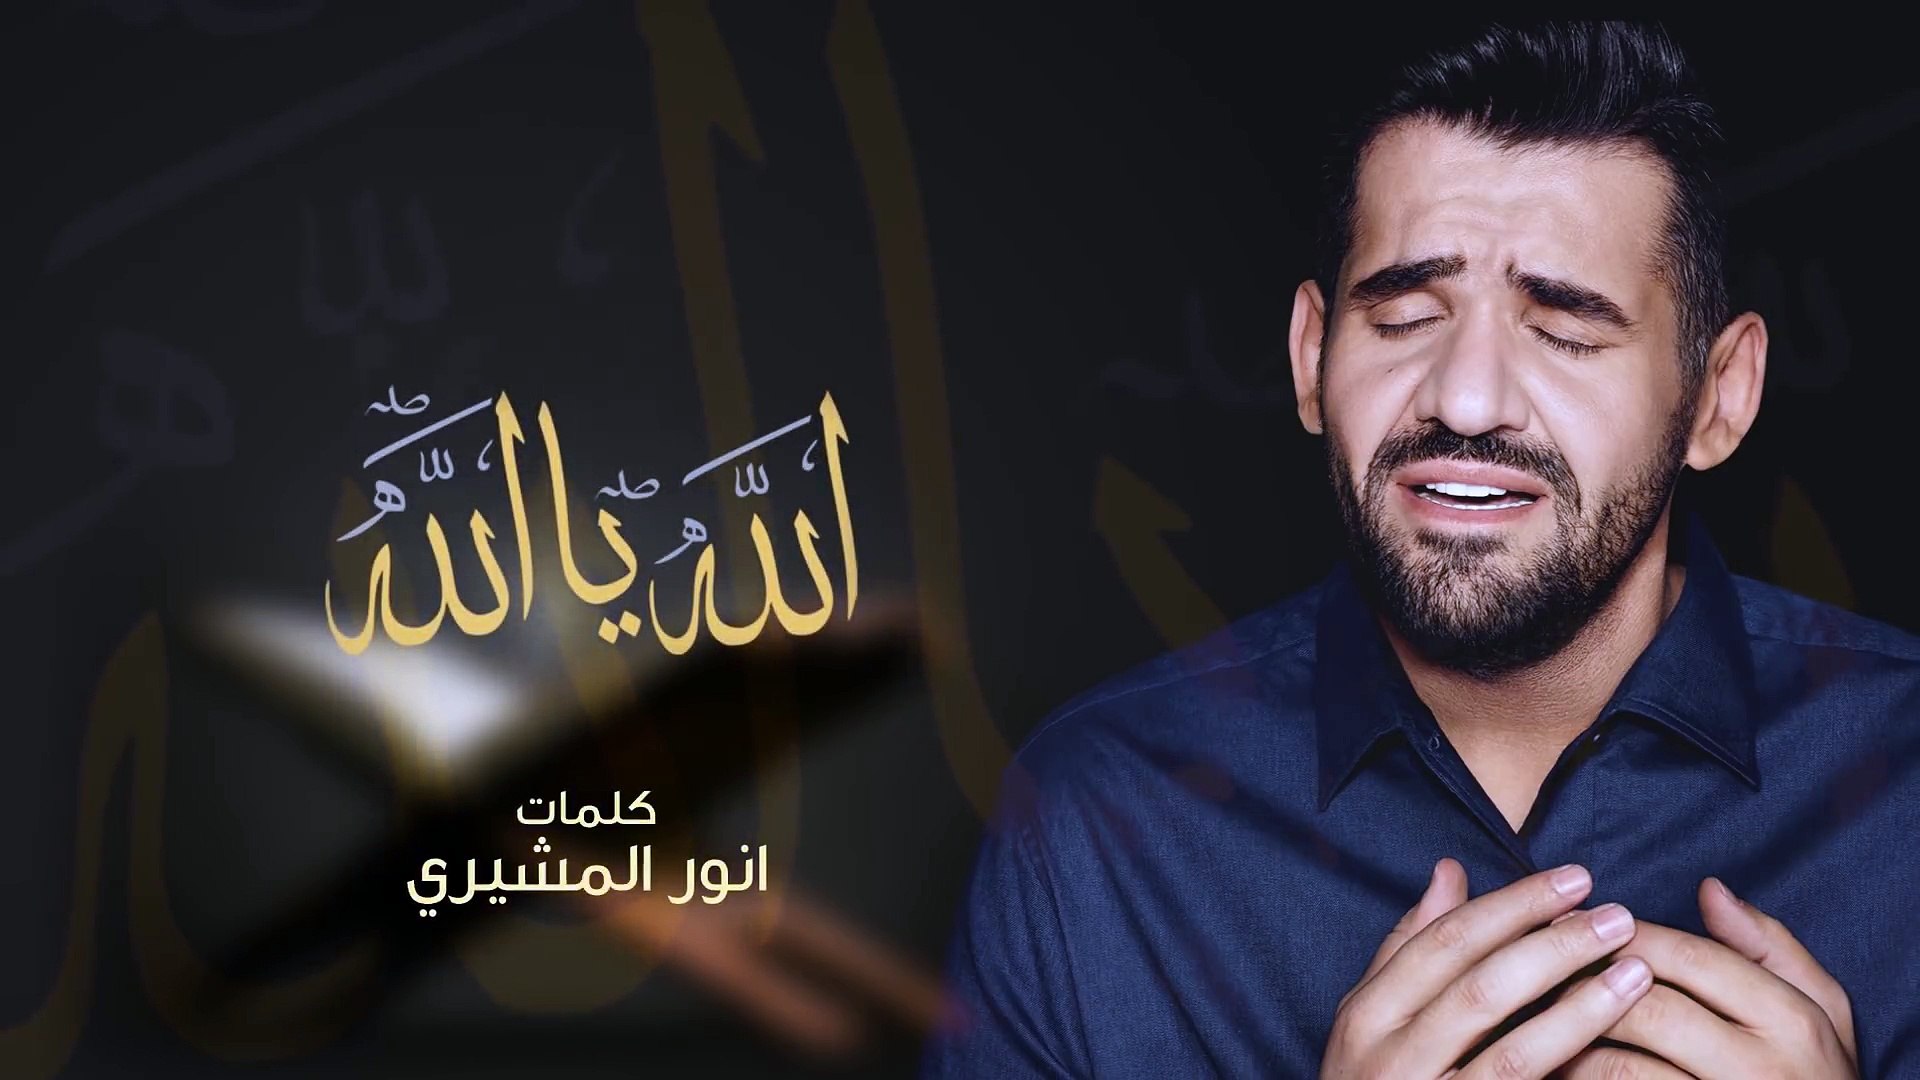 حسين الجسمي الله يا الله النسخة الأصلية 2012 فيديو Dailymotion